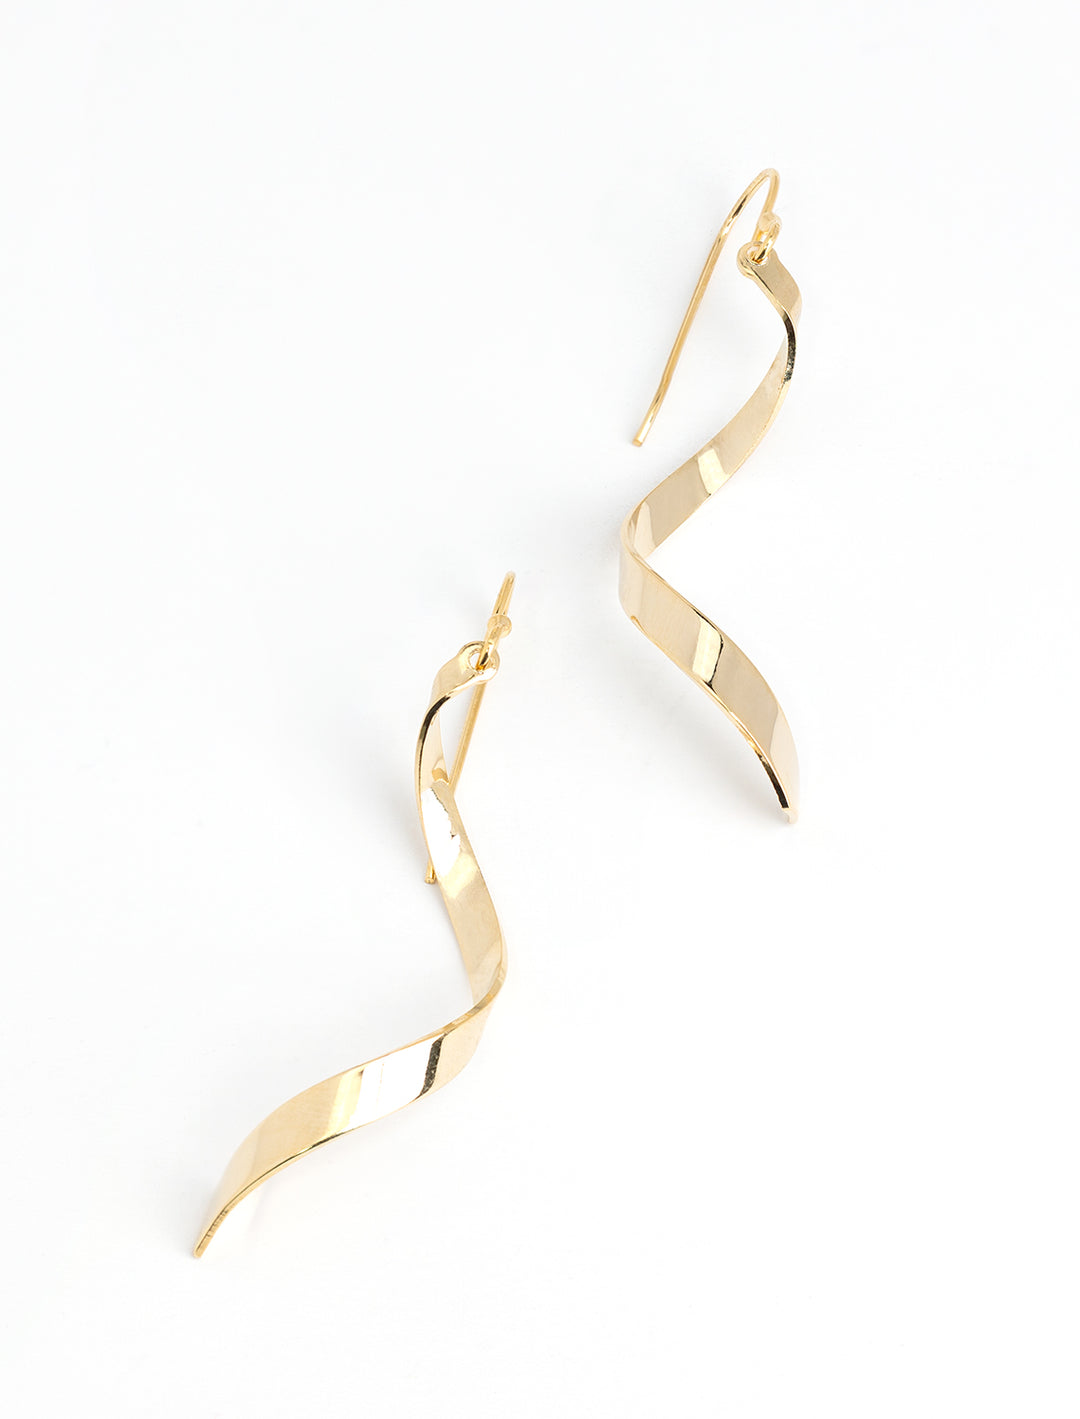 Stylized laydown of AV Max's Gold Ribbon Twist Earrings.